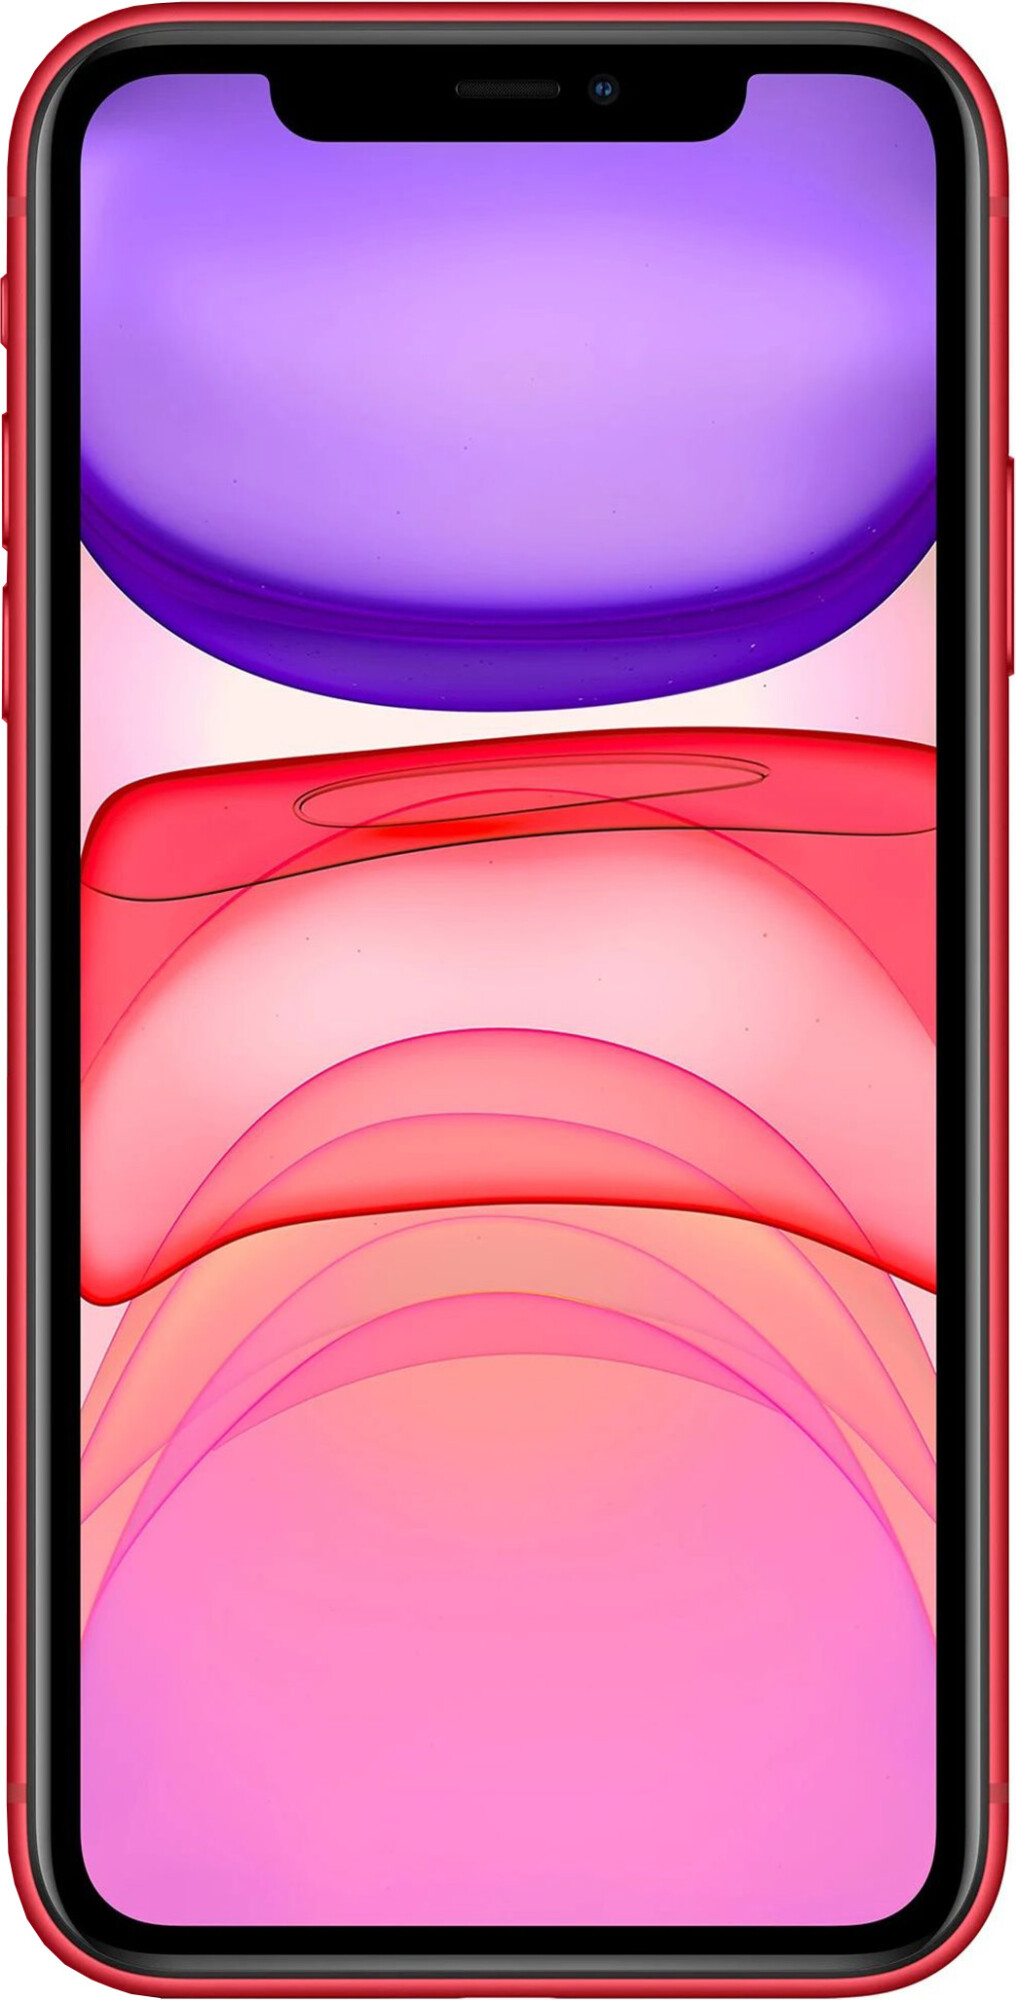 iPhone 11 128Gb Red Slim Box (MHDK3) 